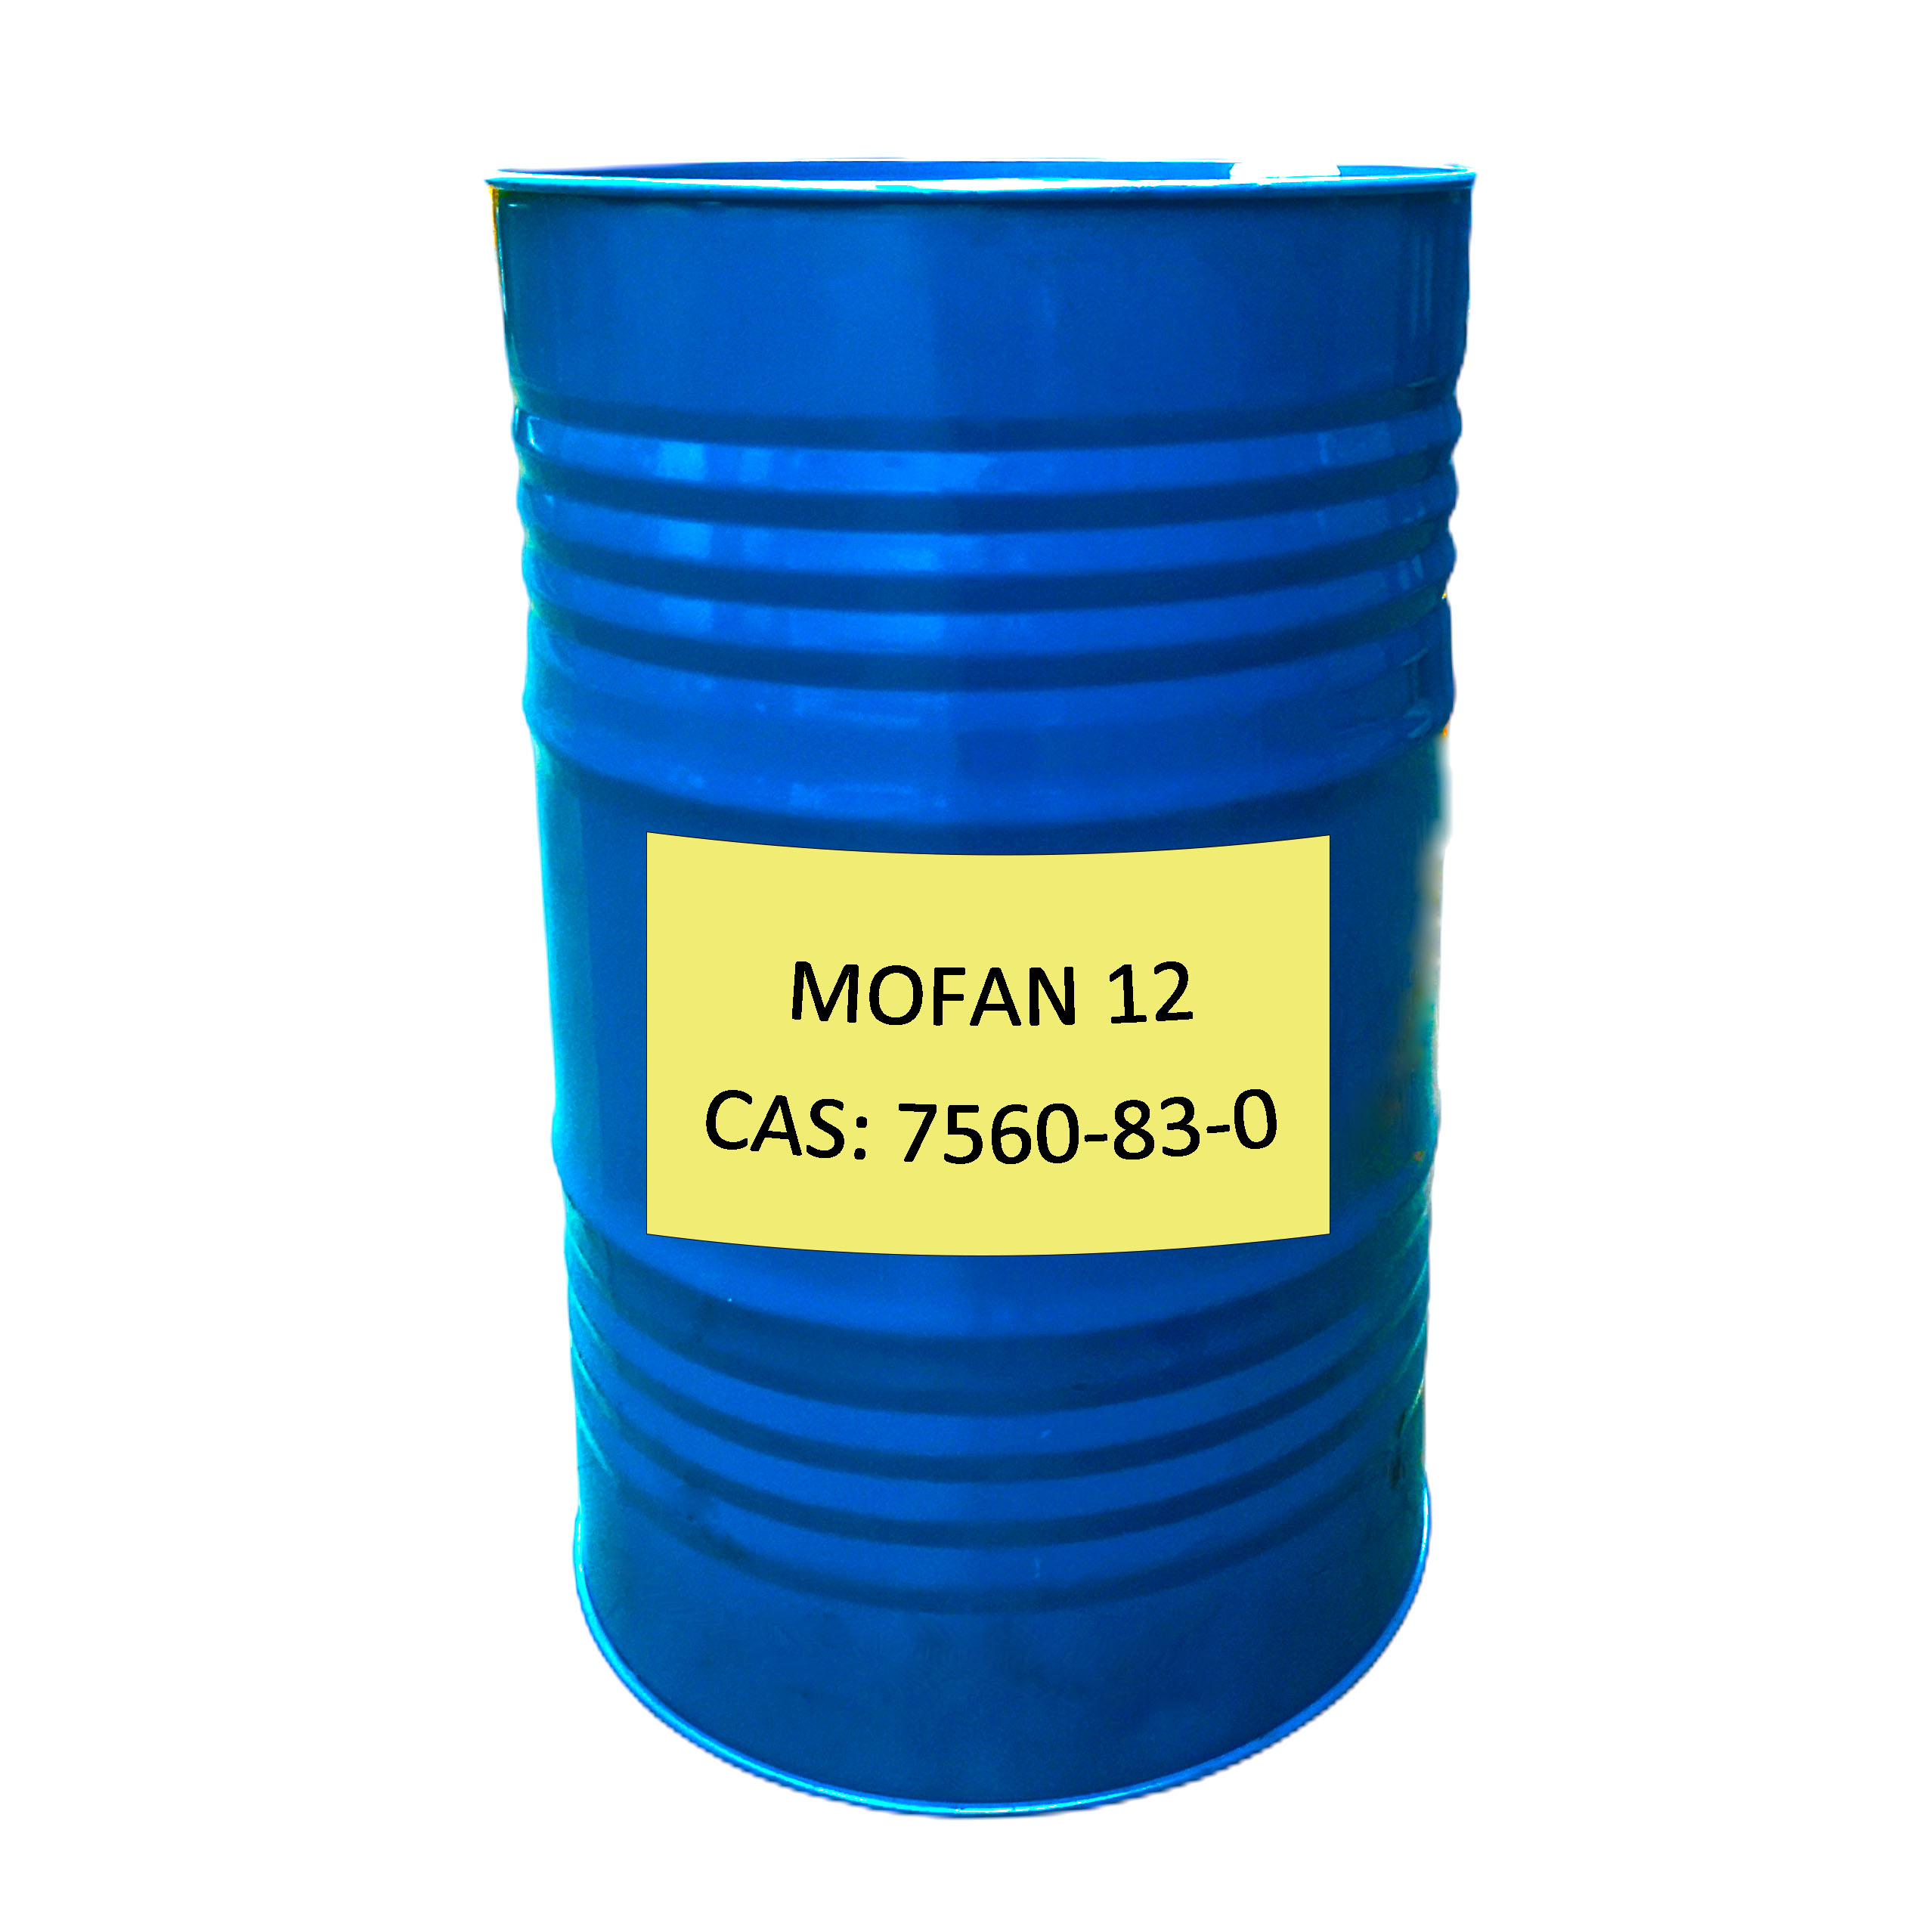 MOFAN 12